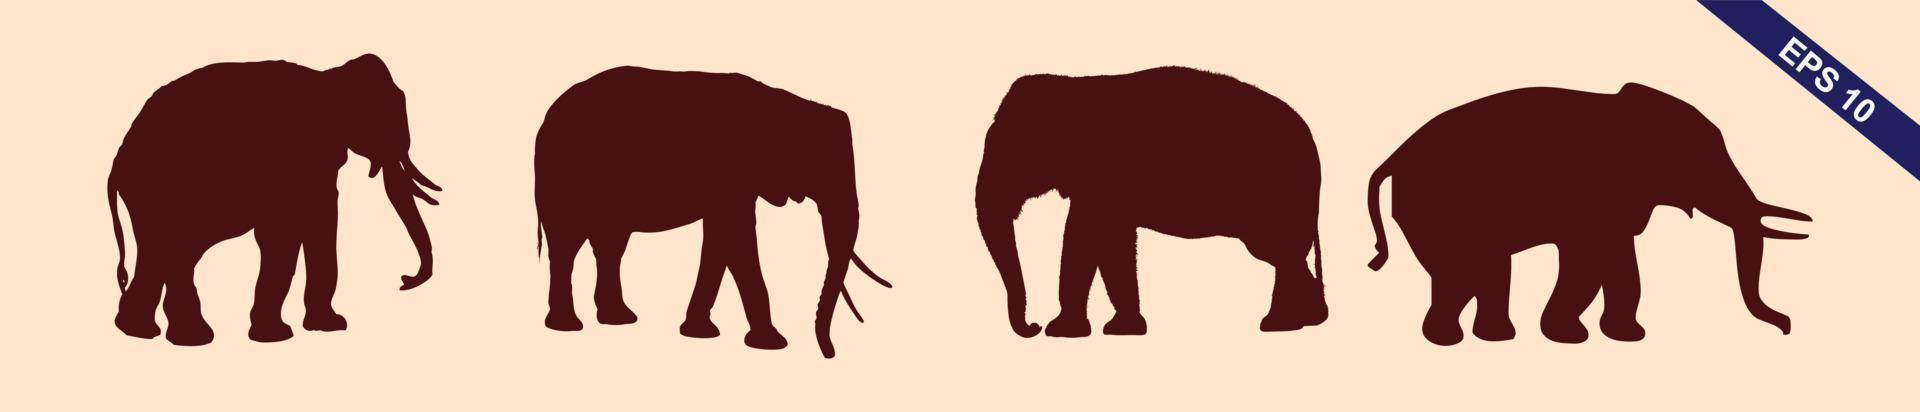 Satz bearbeitbarer Vektorsilhouetten afrikanischer Elefanten in verschiedenen Posen vektor